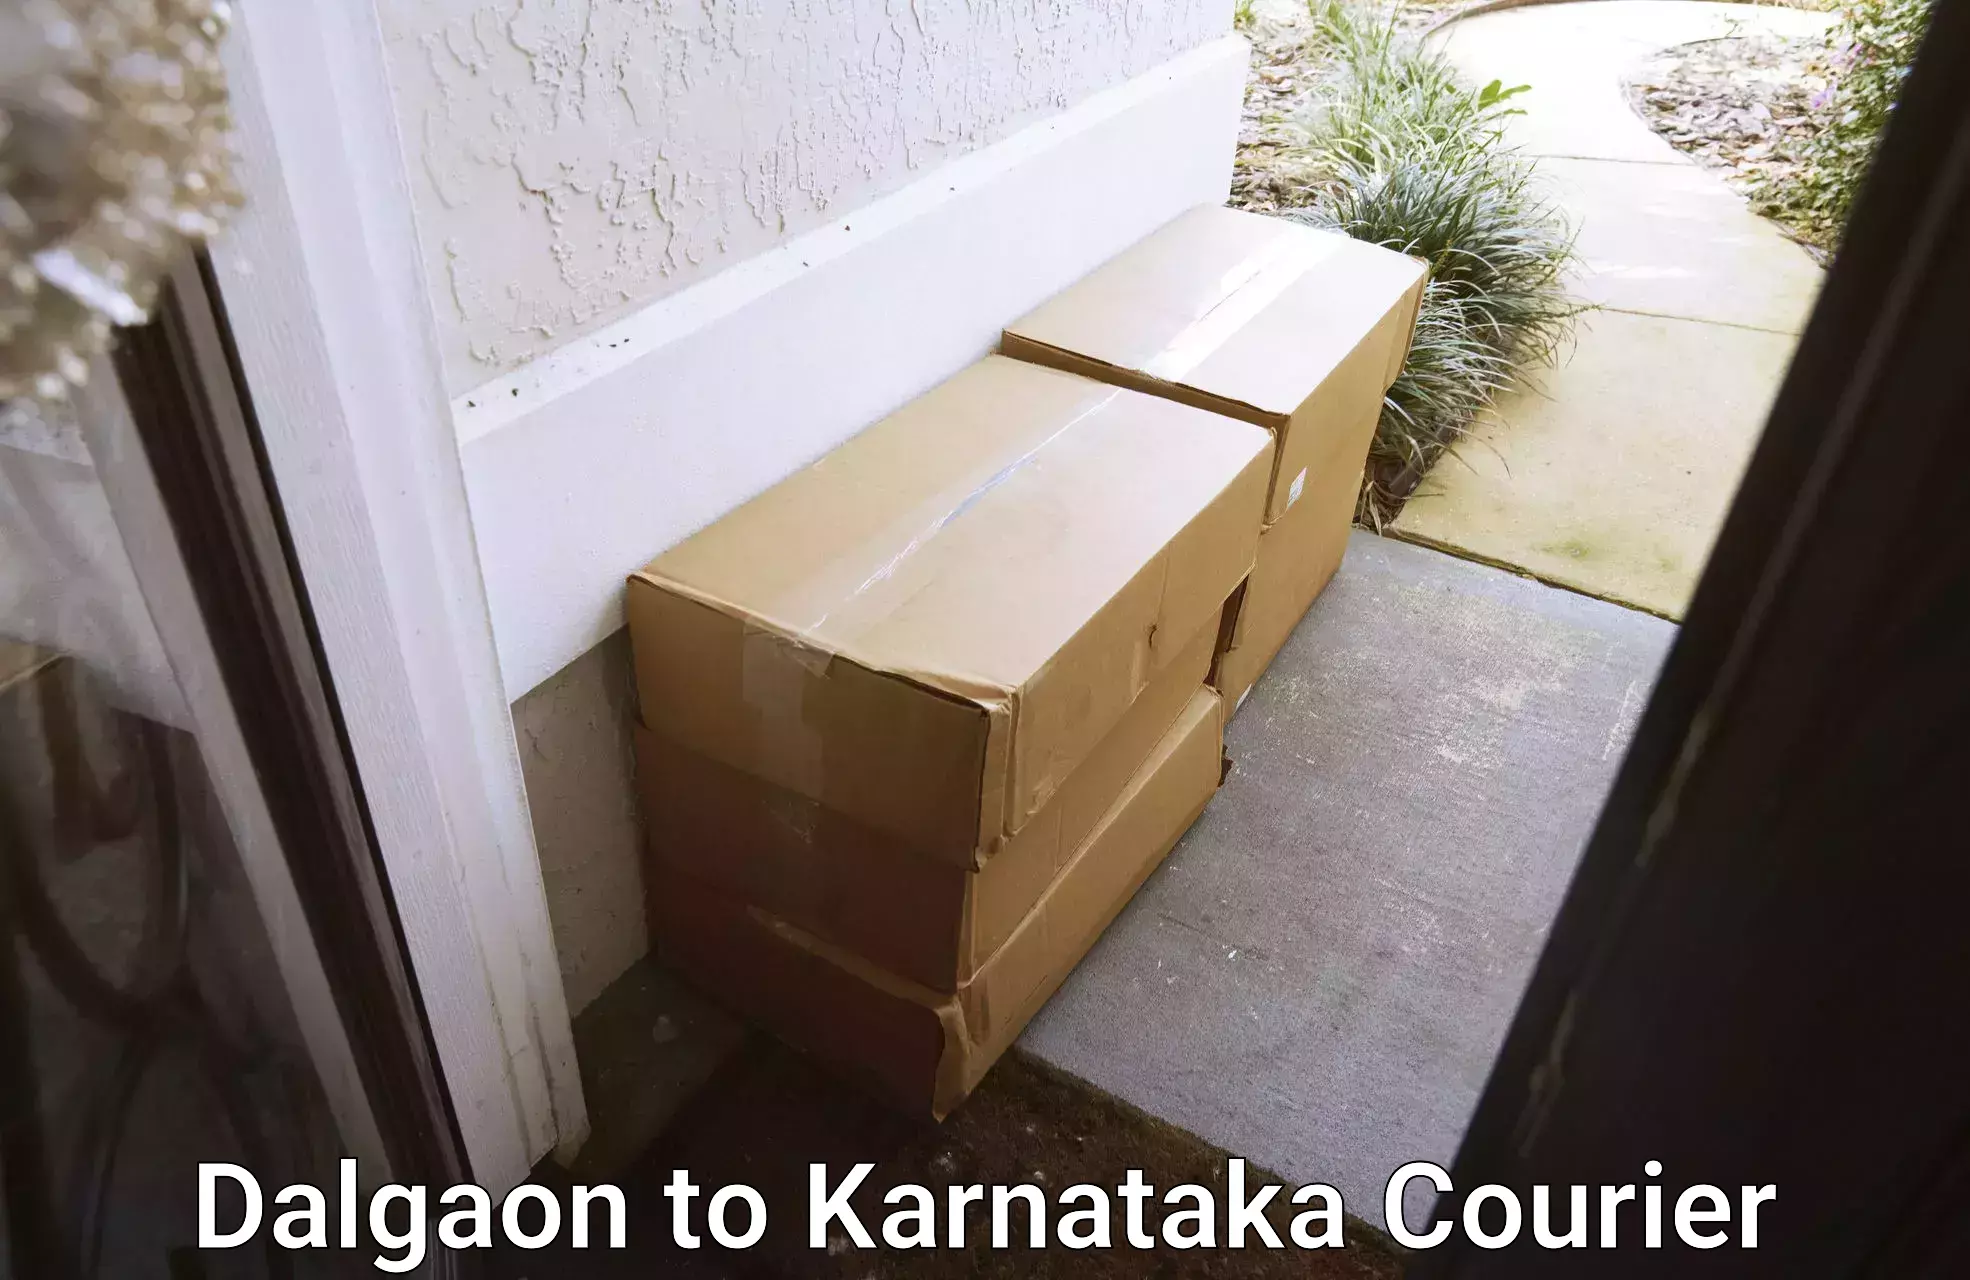 On-demand delivery Dalgaon to Karnataka